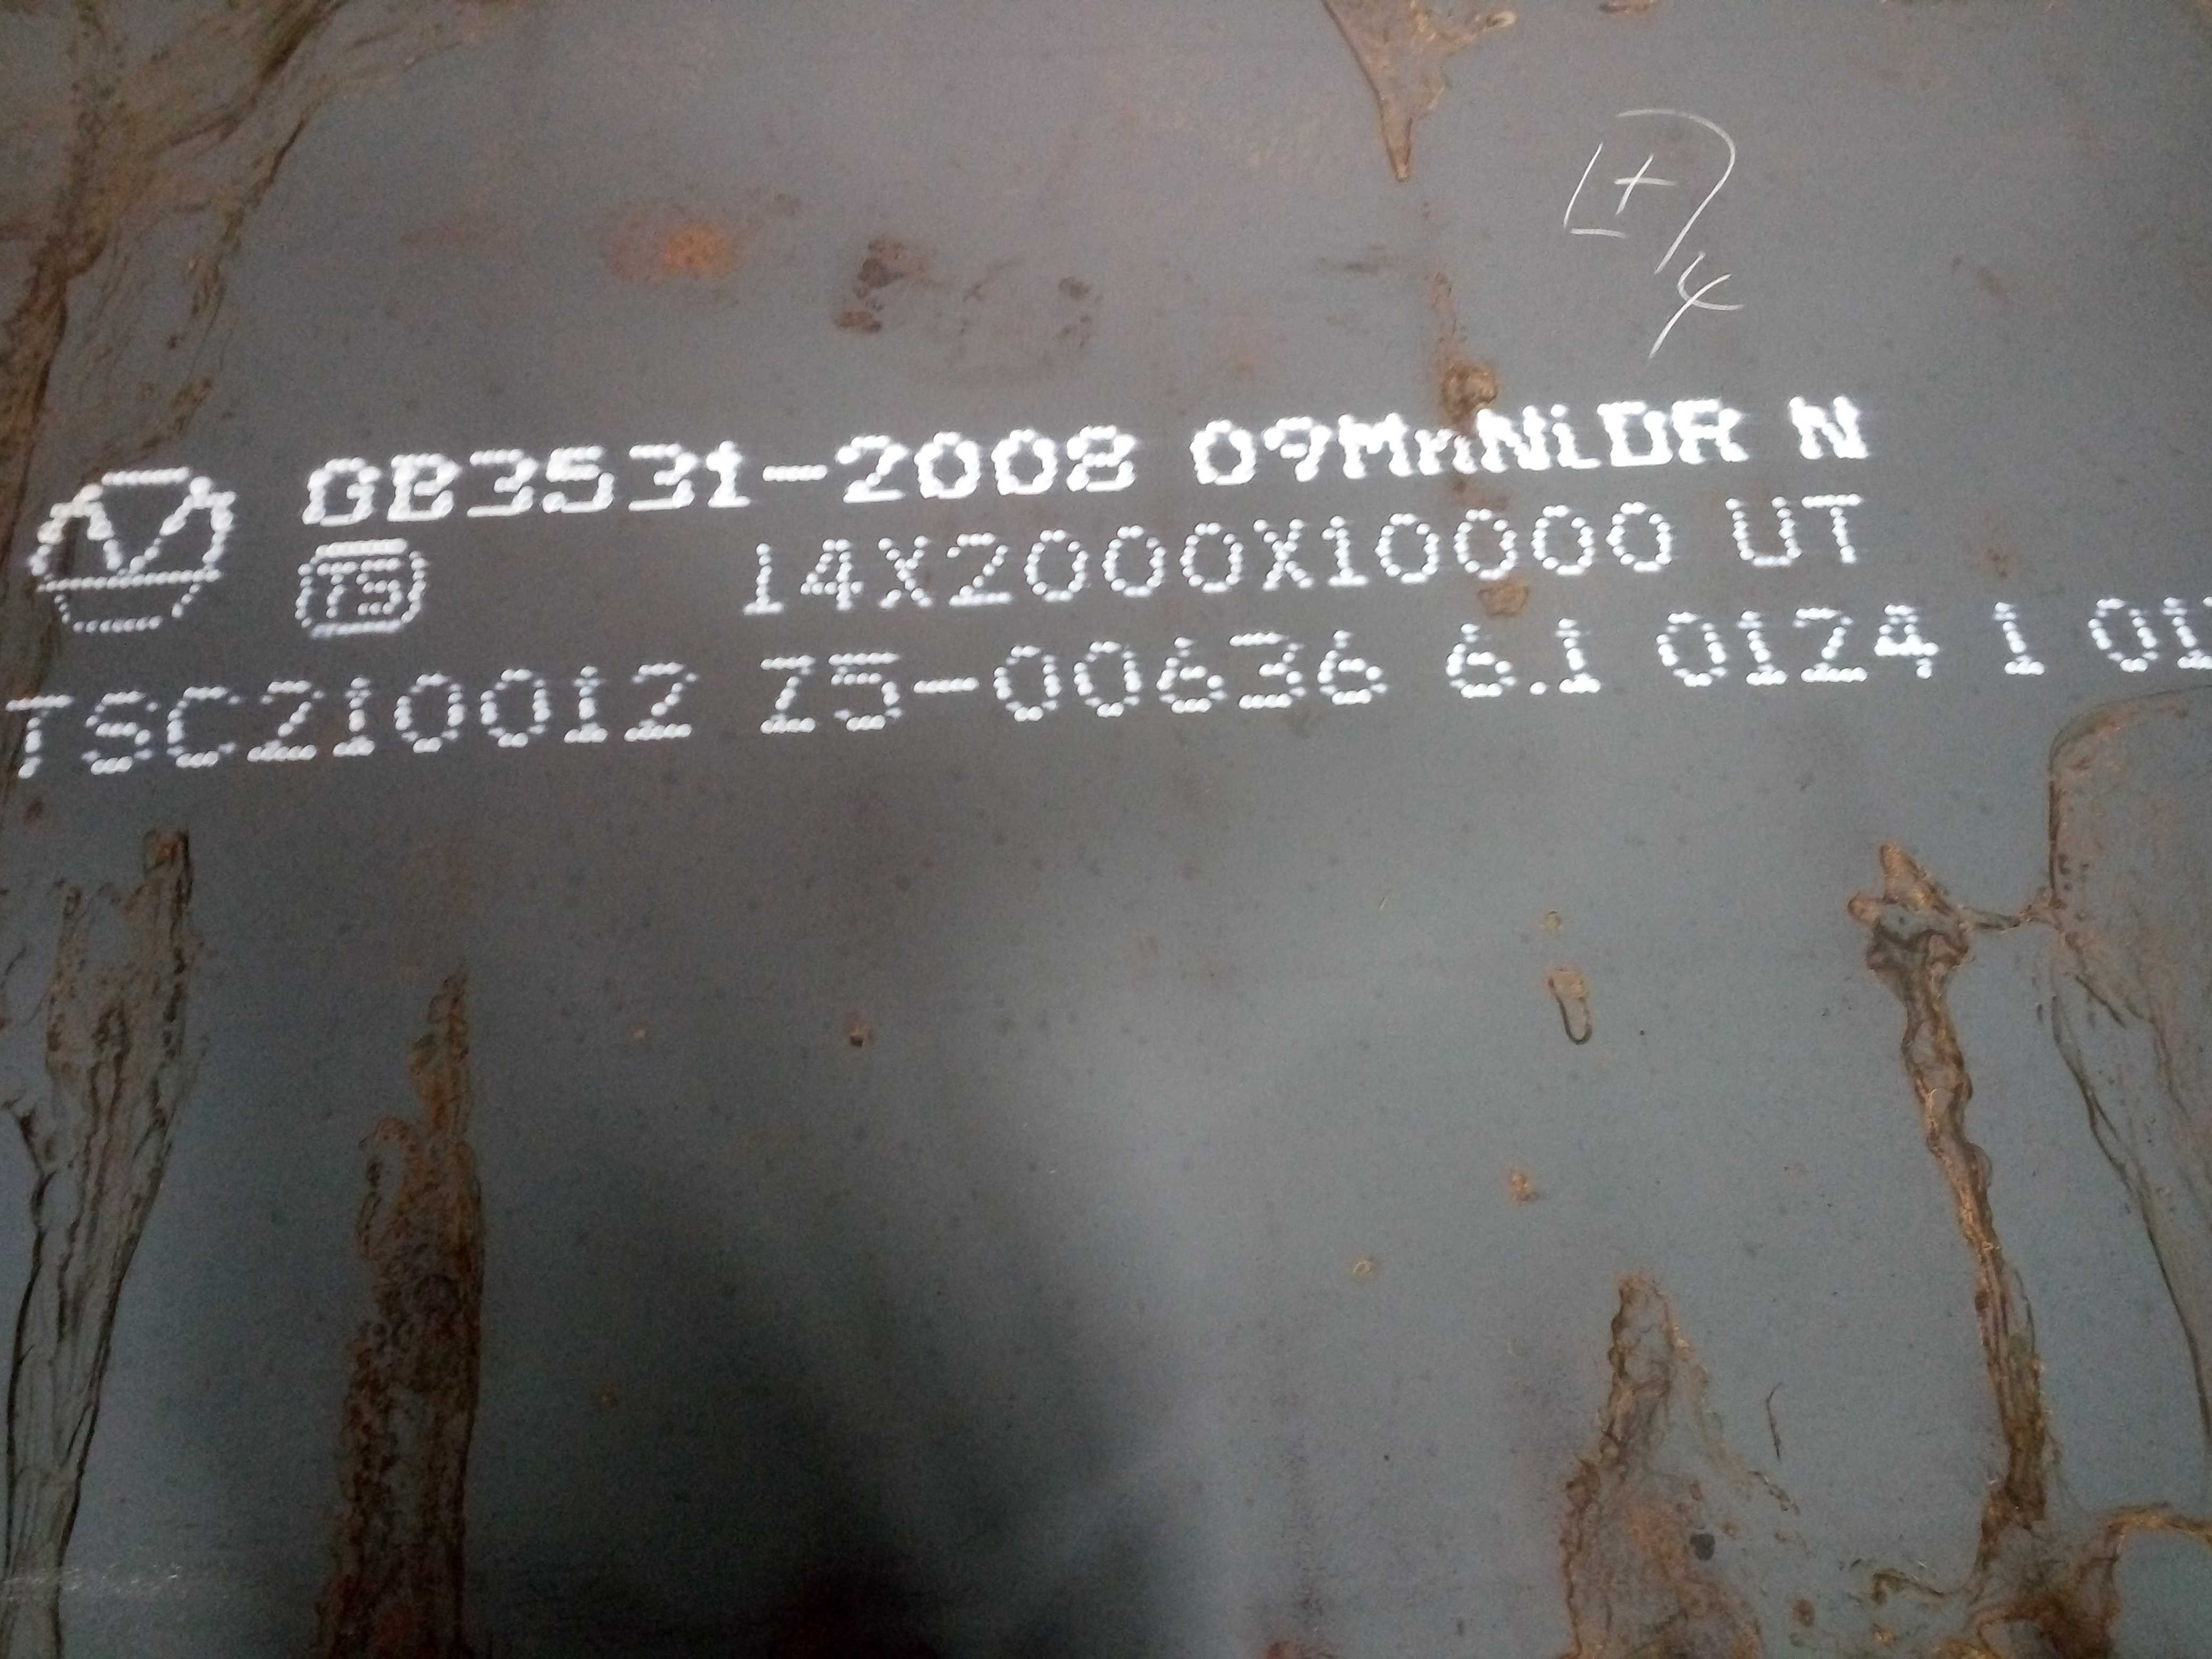 09MnNiDR：是低温压力容器用钢板